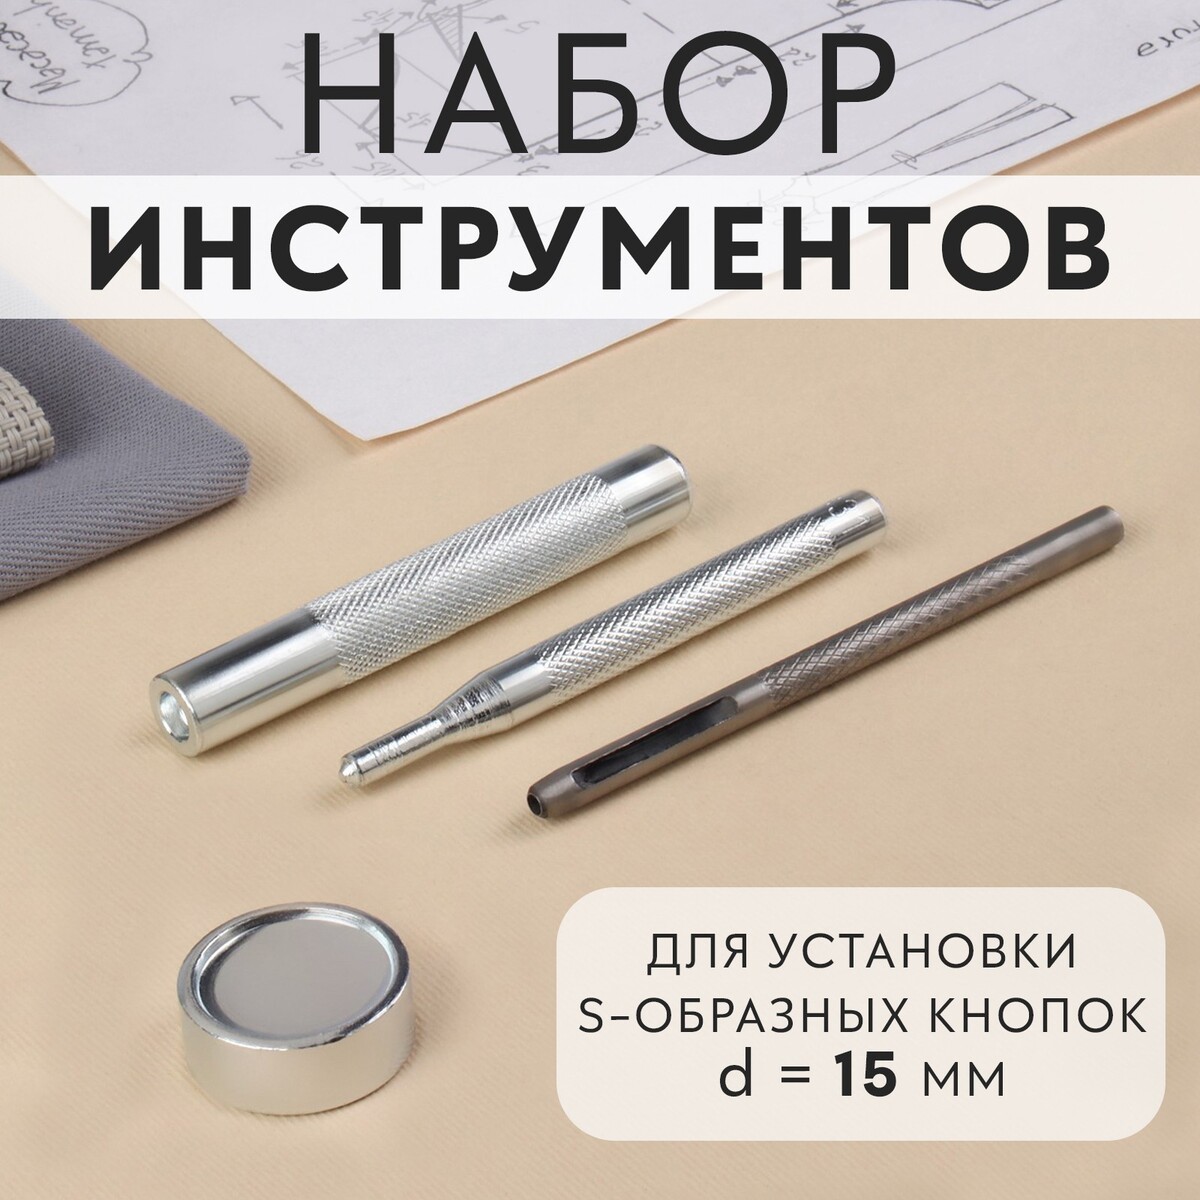 Набор инструментов для ручной установки s-образных кнопок №831, d = 15 мм набор инструментов для ручной установки о образных кнопок 201 d 15 мм